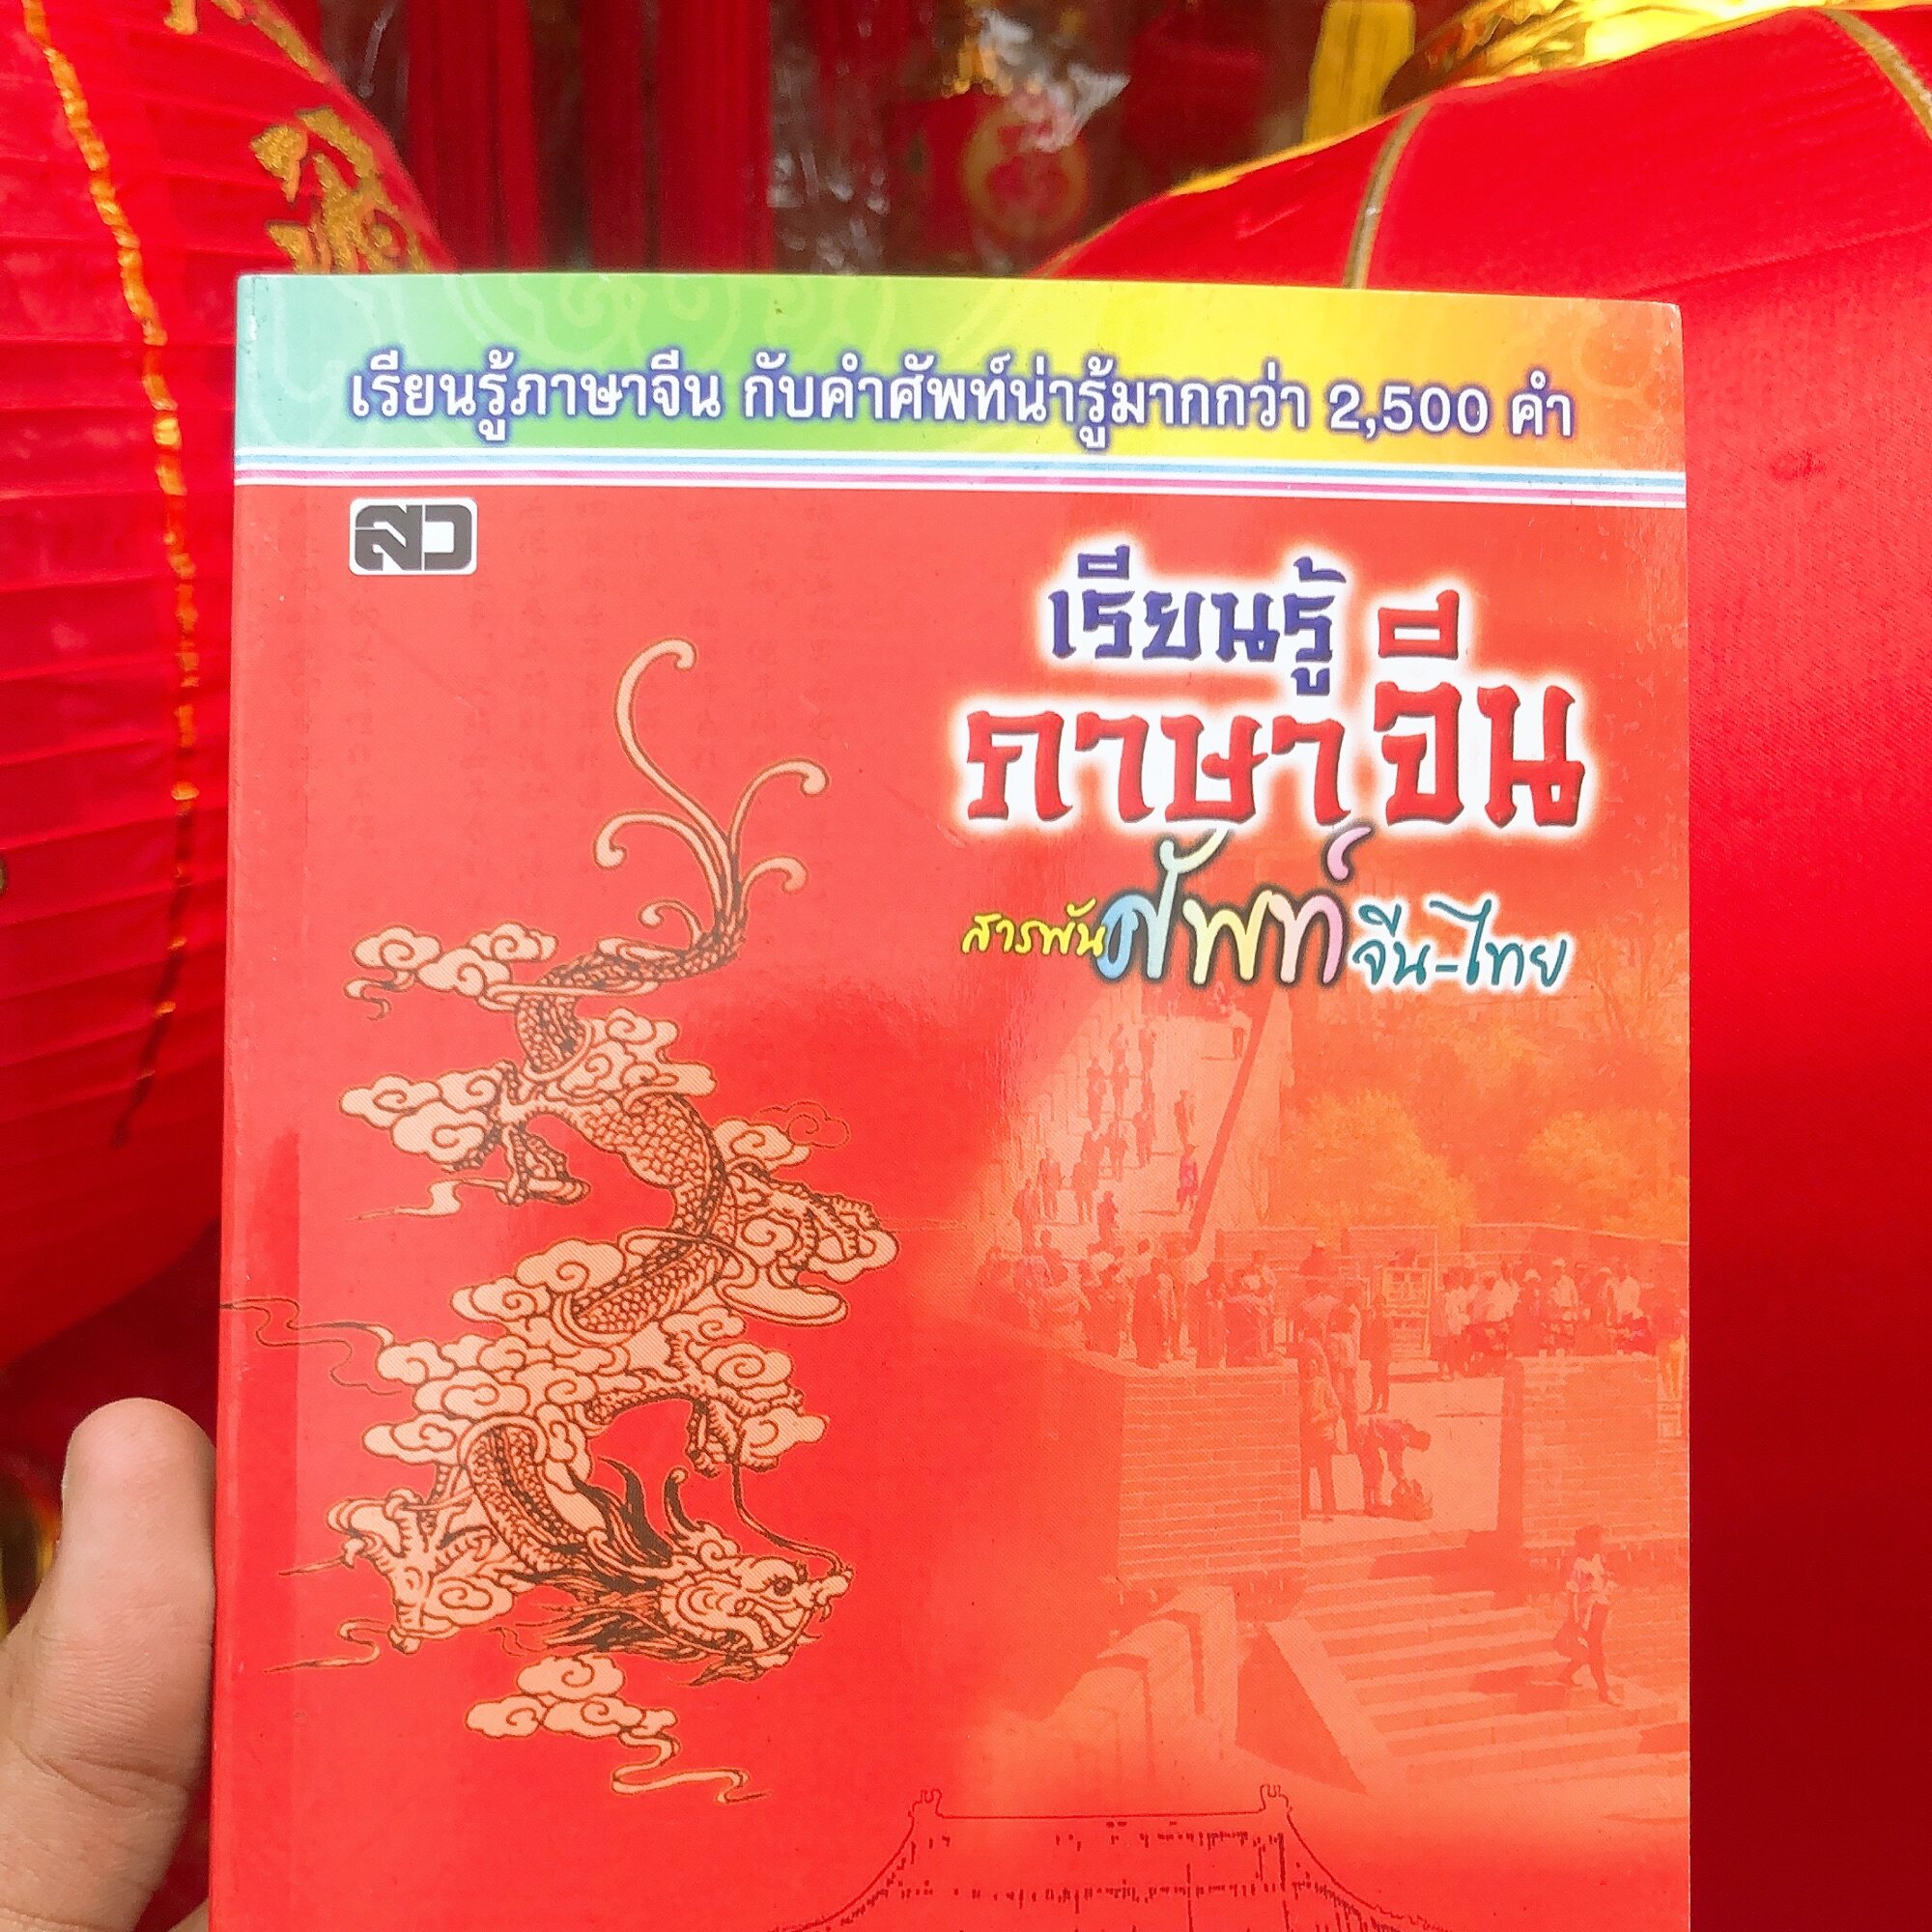 หนังสือ เรียนรู้ภาษาจีนสารพัน ศัพท์ จีน-ไทย เรียนรู้ภาษาจีน กับคำศัพท์น่ารู้มากกว่า2,500คำ